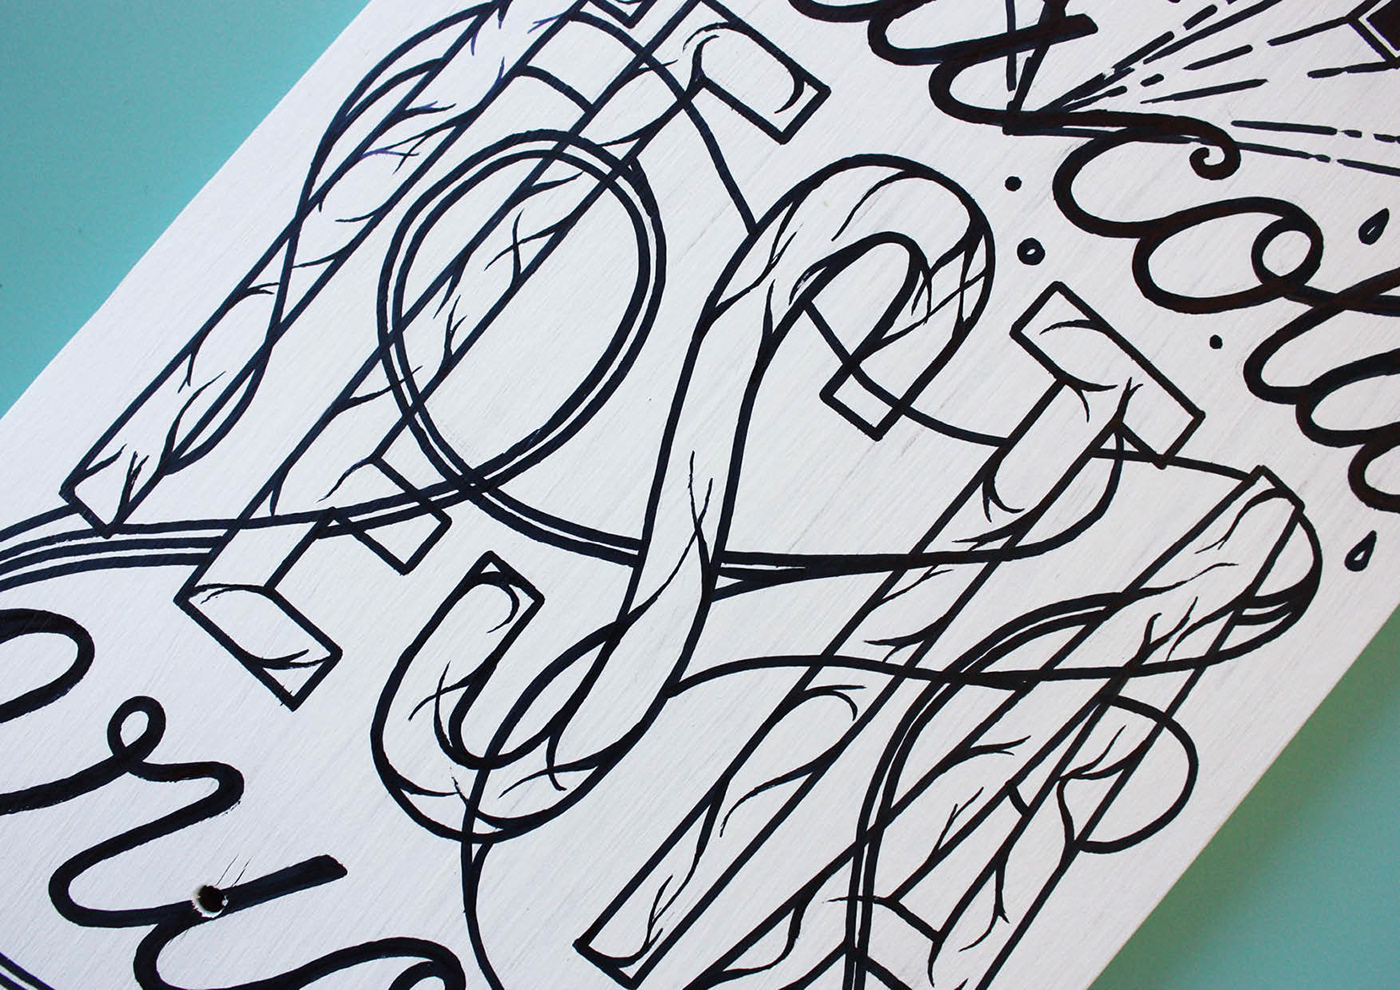 skate skateboardsconfluence illustrazione lettering Handlettering TreAllegriRagazziMorti tarm letters handmade skateboard